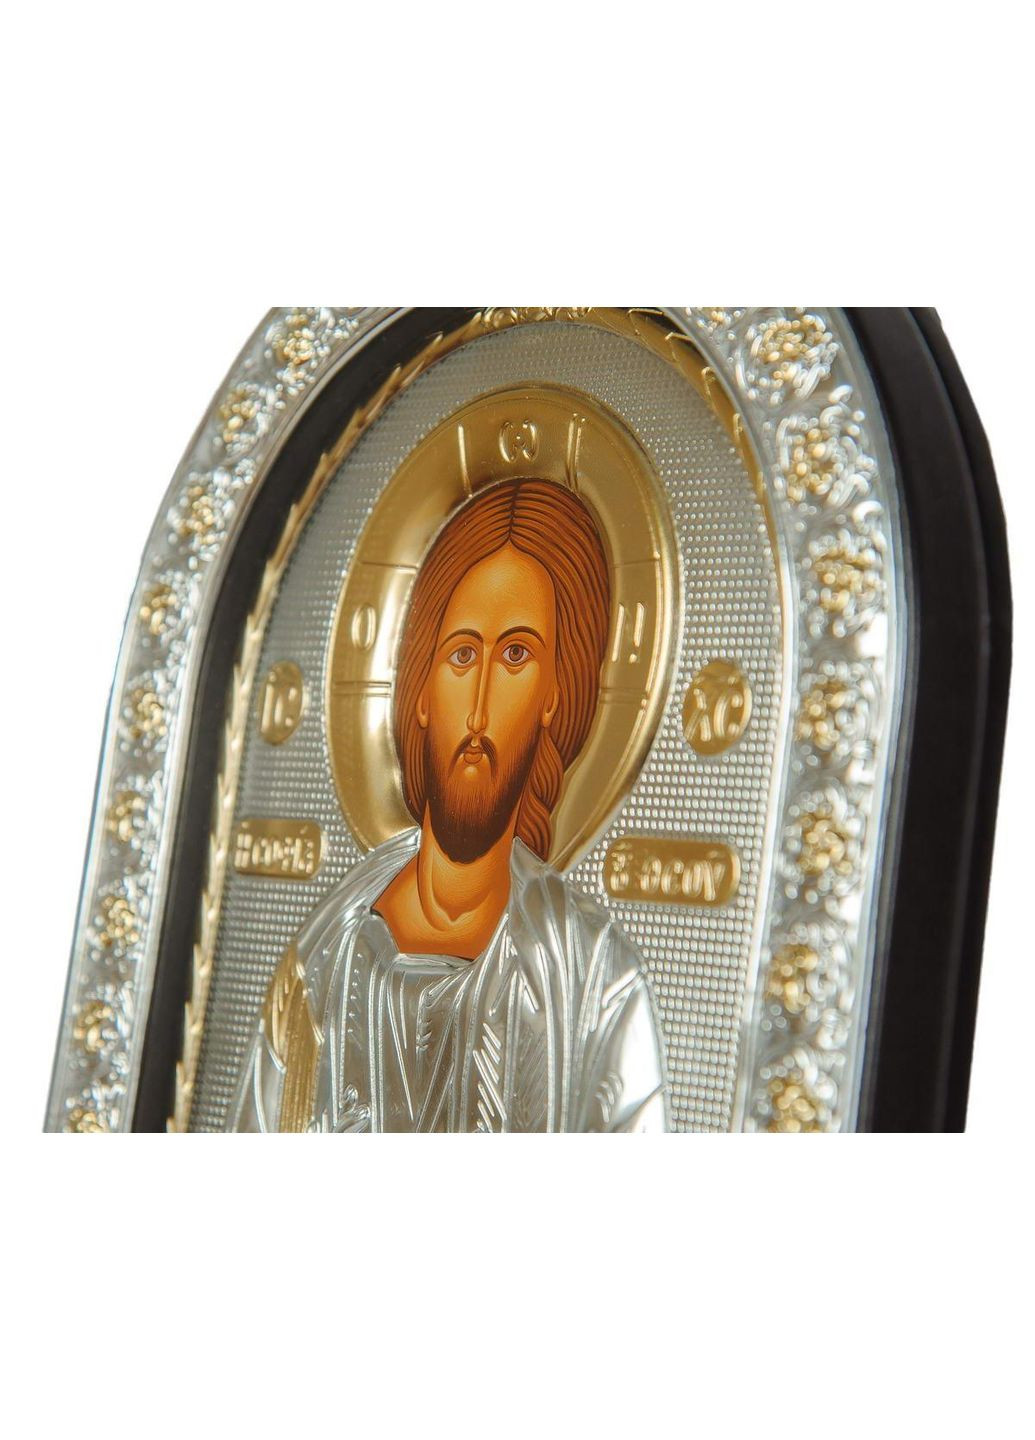 Спаситель Ісус 12х15,5см Срібна Ікона під Склом, обгорнута темною шкірою (Греція) Silver Axion (266266207)